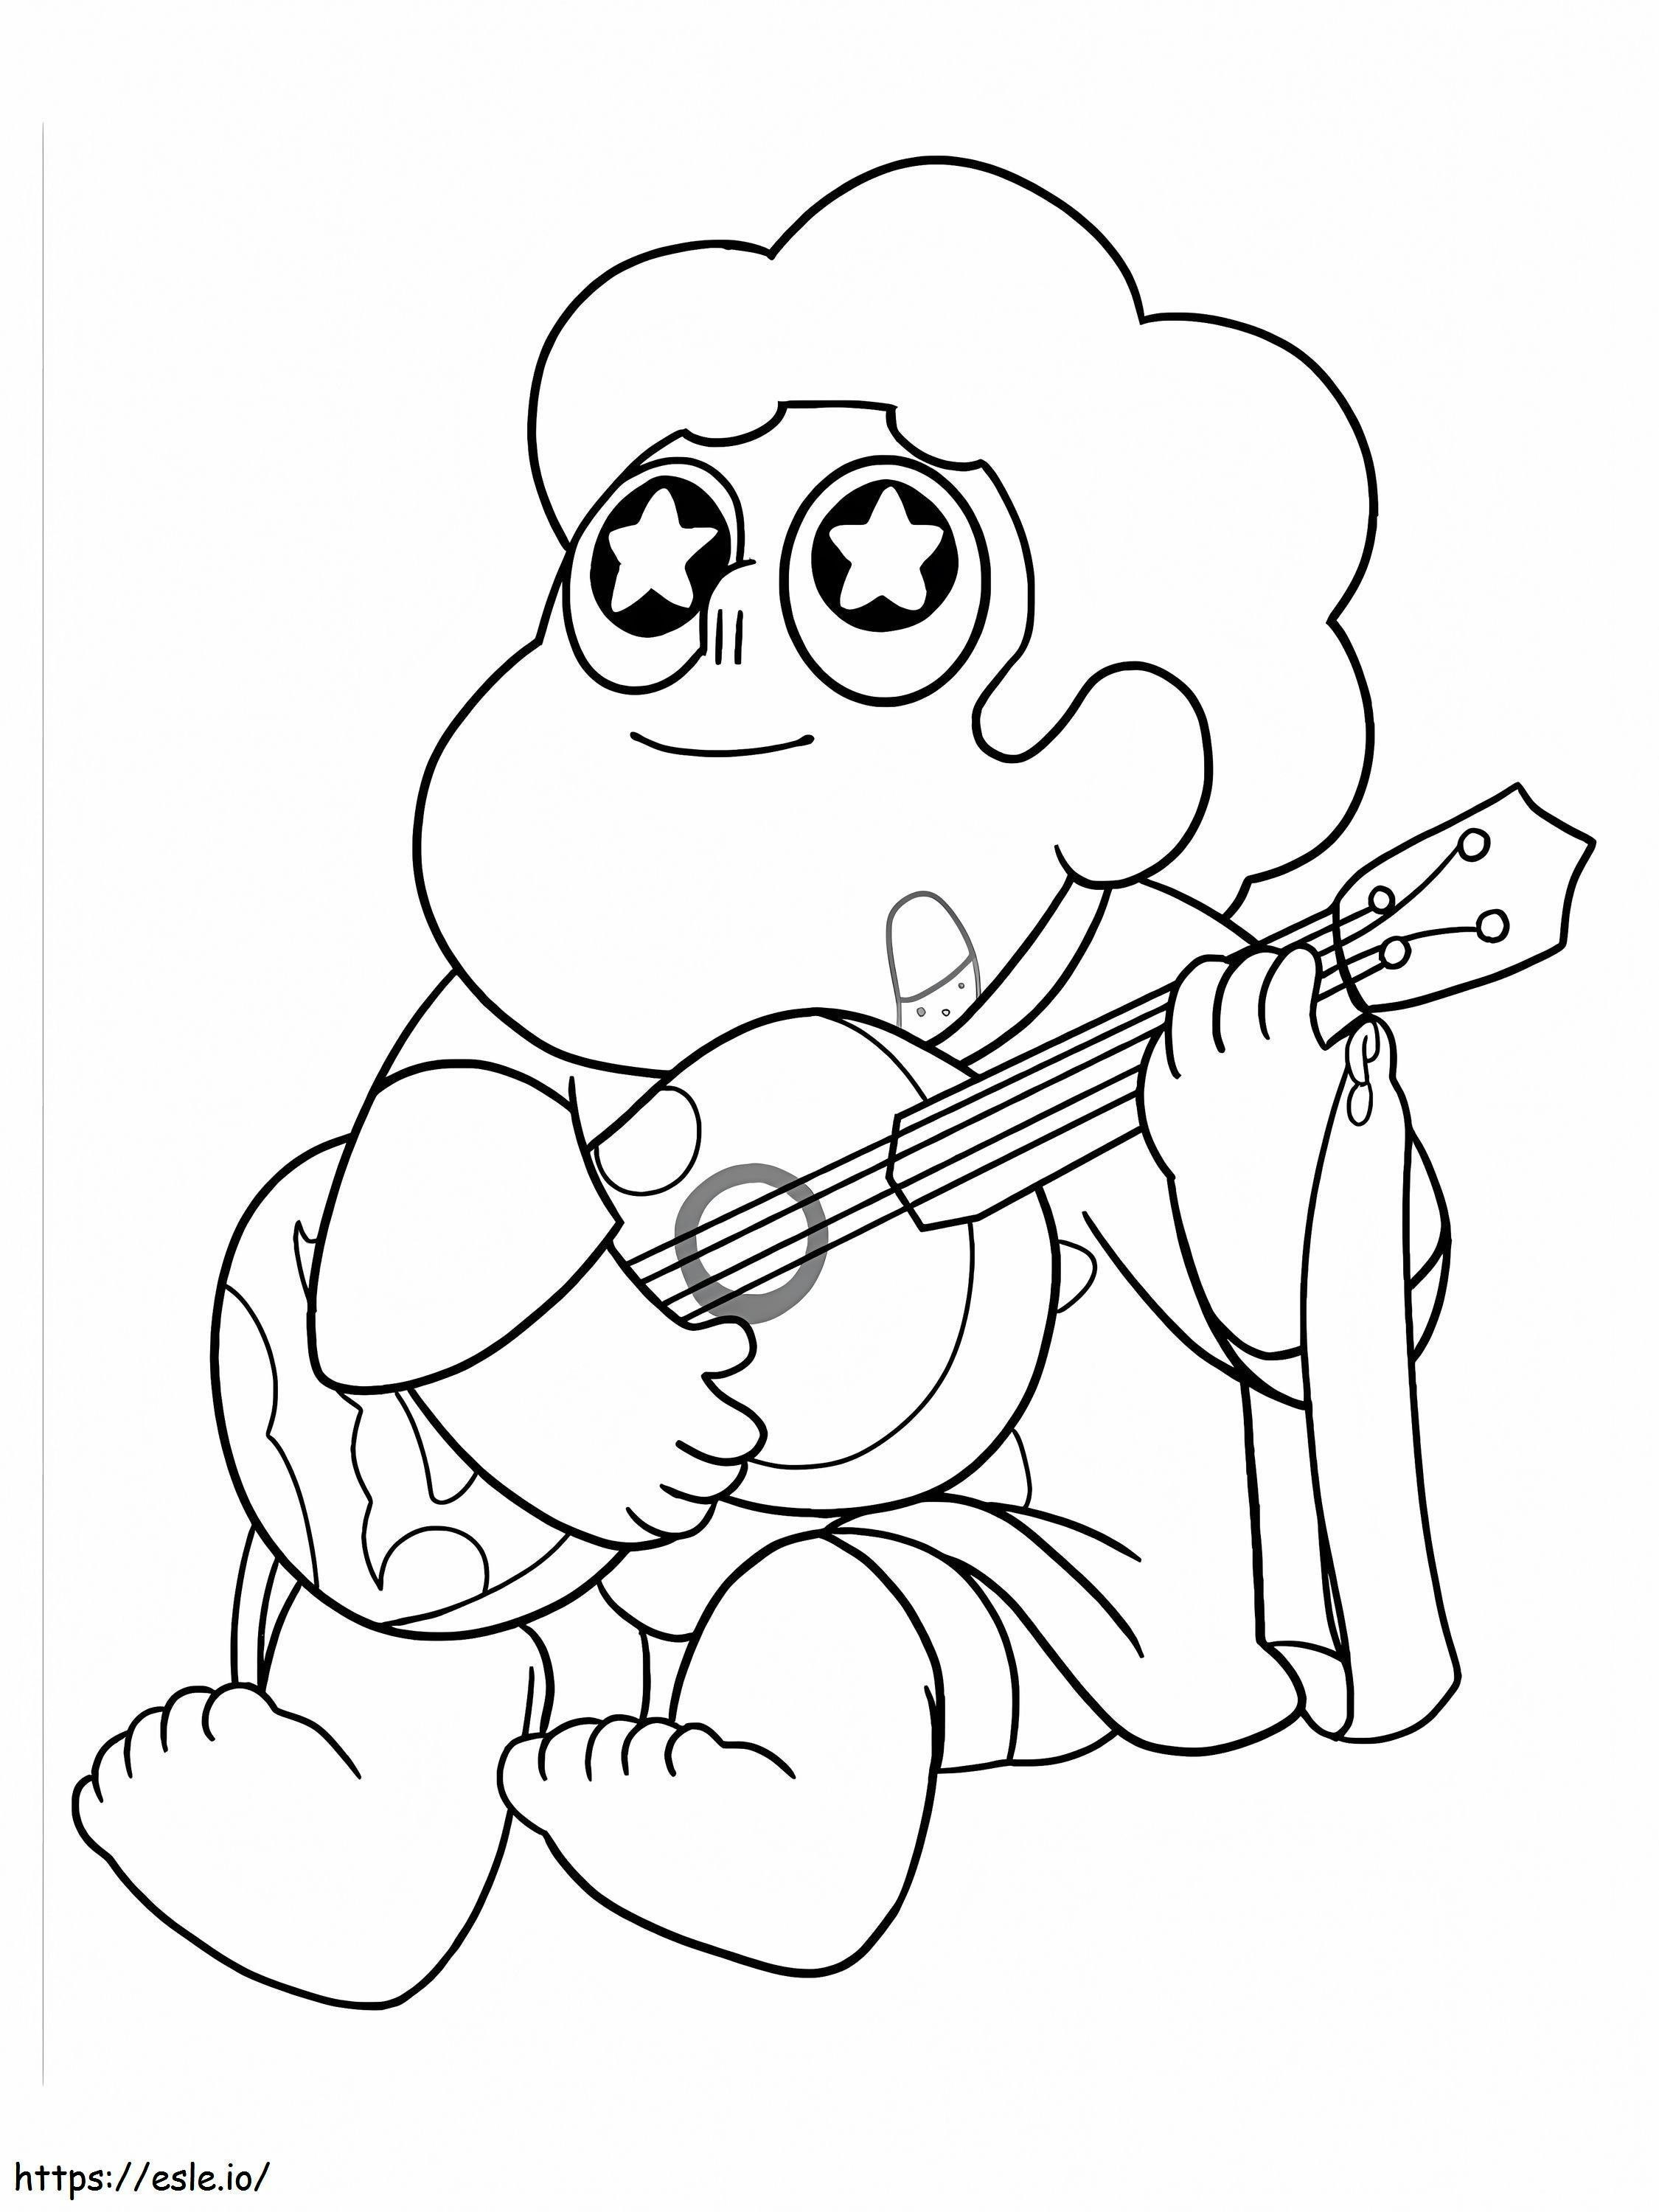 Steven cântând la chitară de colorat